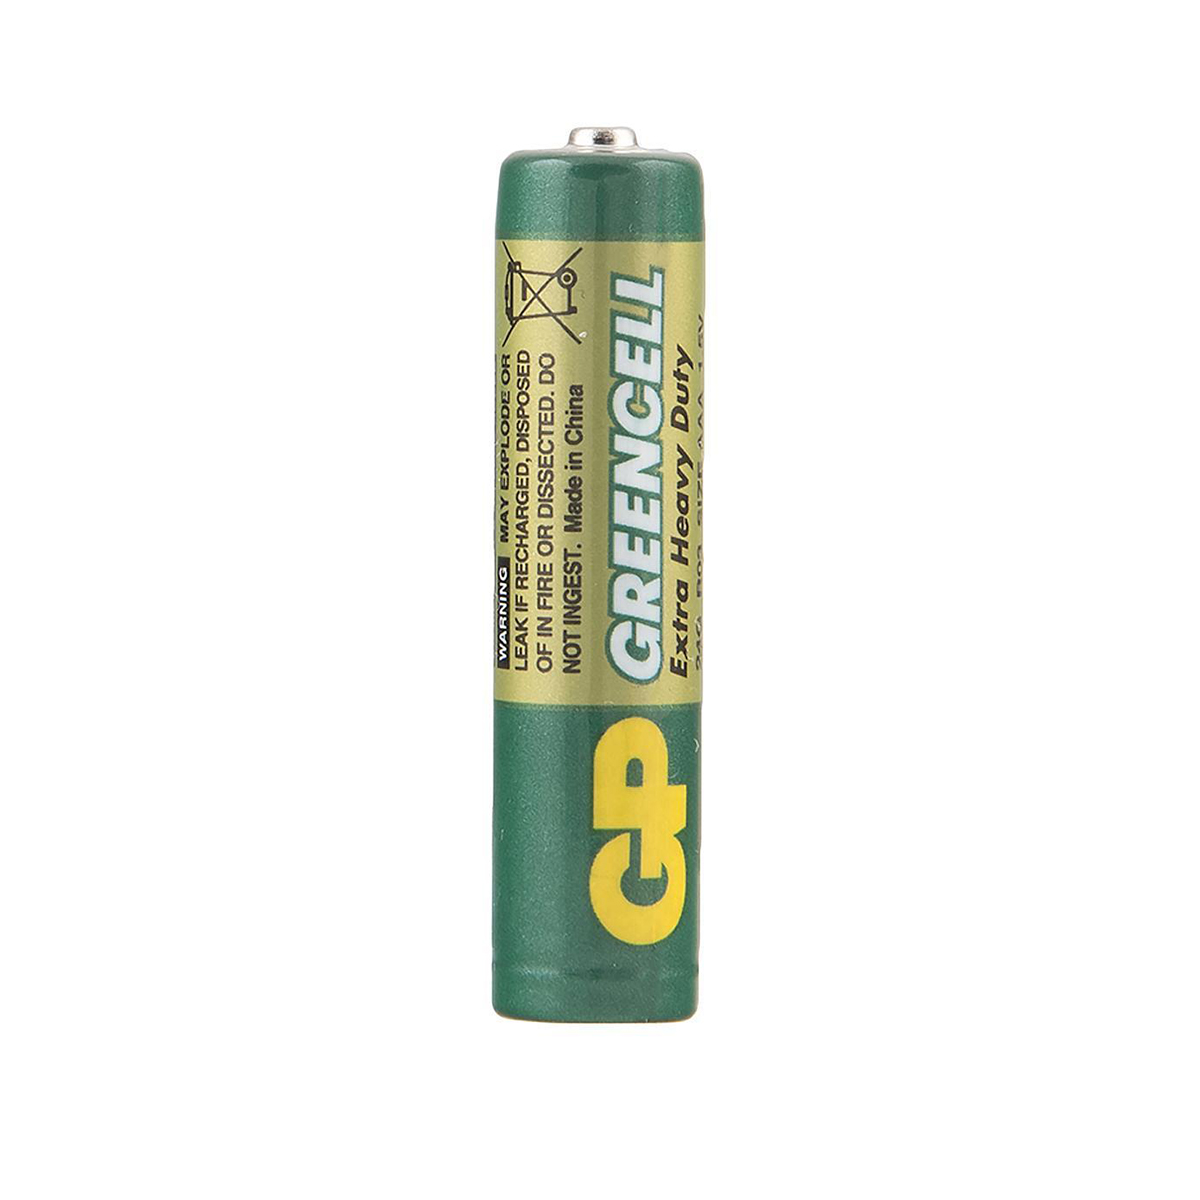 Батарейка gp greencell 24g-2cr4  тип ааа (2 шт. в блистере) (10/120)